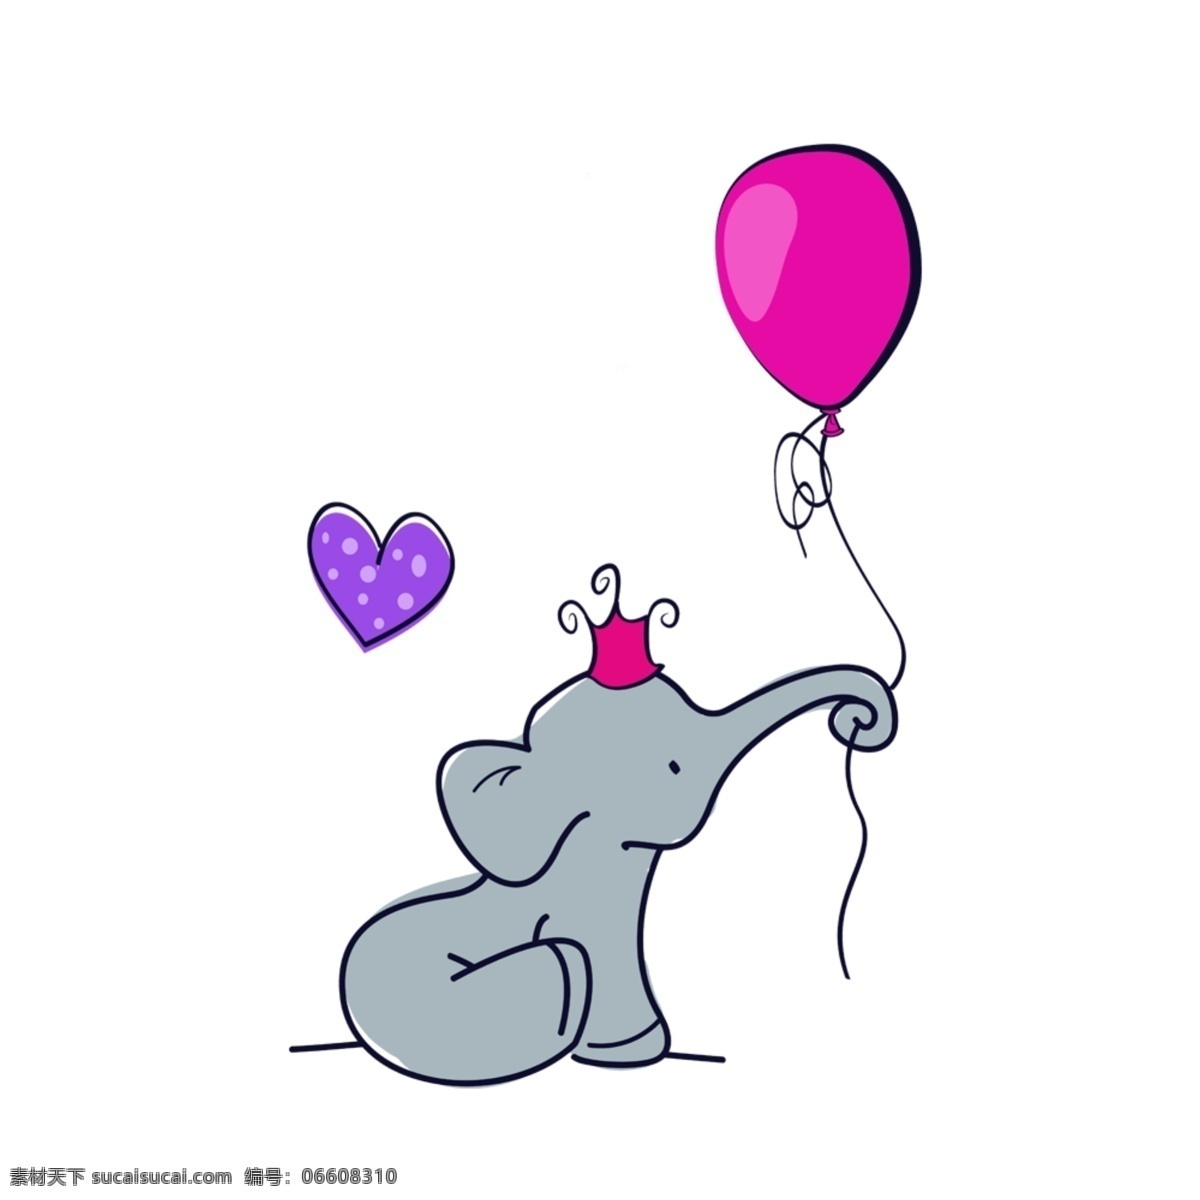 大象 鼻子 卷 气球 心形 灰色 卡通